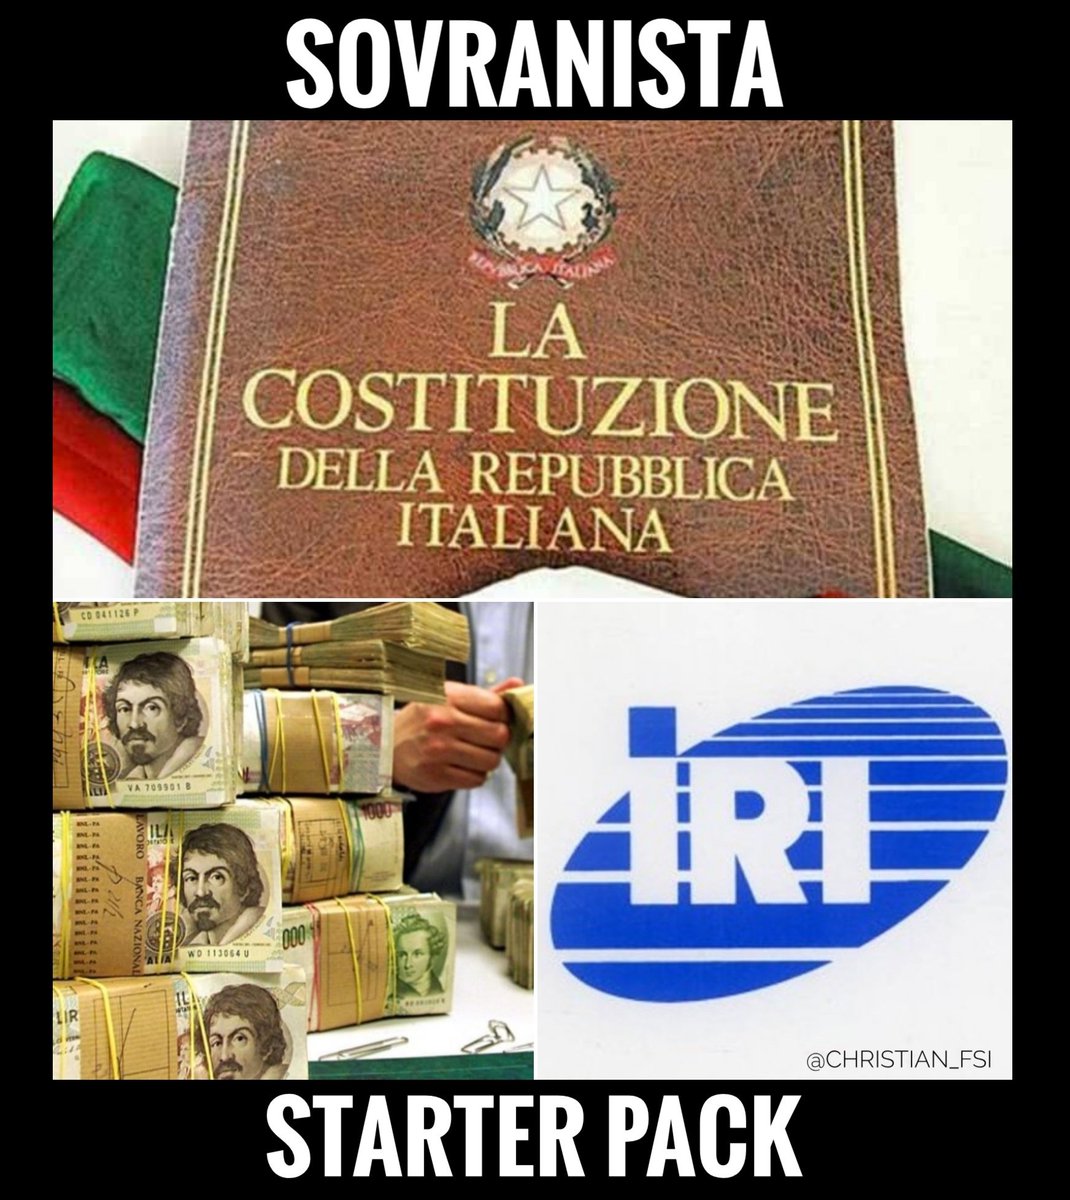 Il vero starter pack del #sovranista
#Costituzione, #moneta e #pianoindustriale.